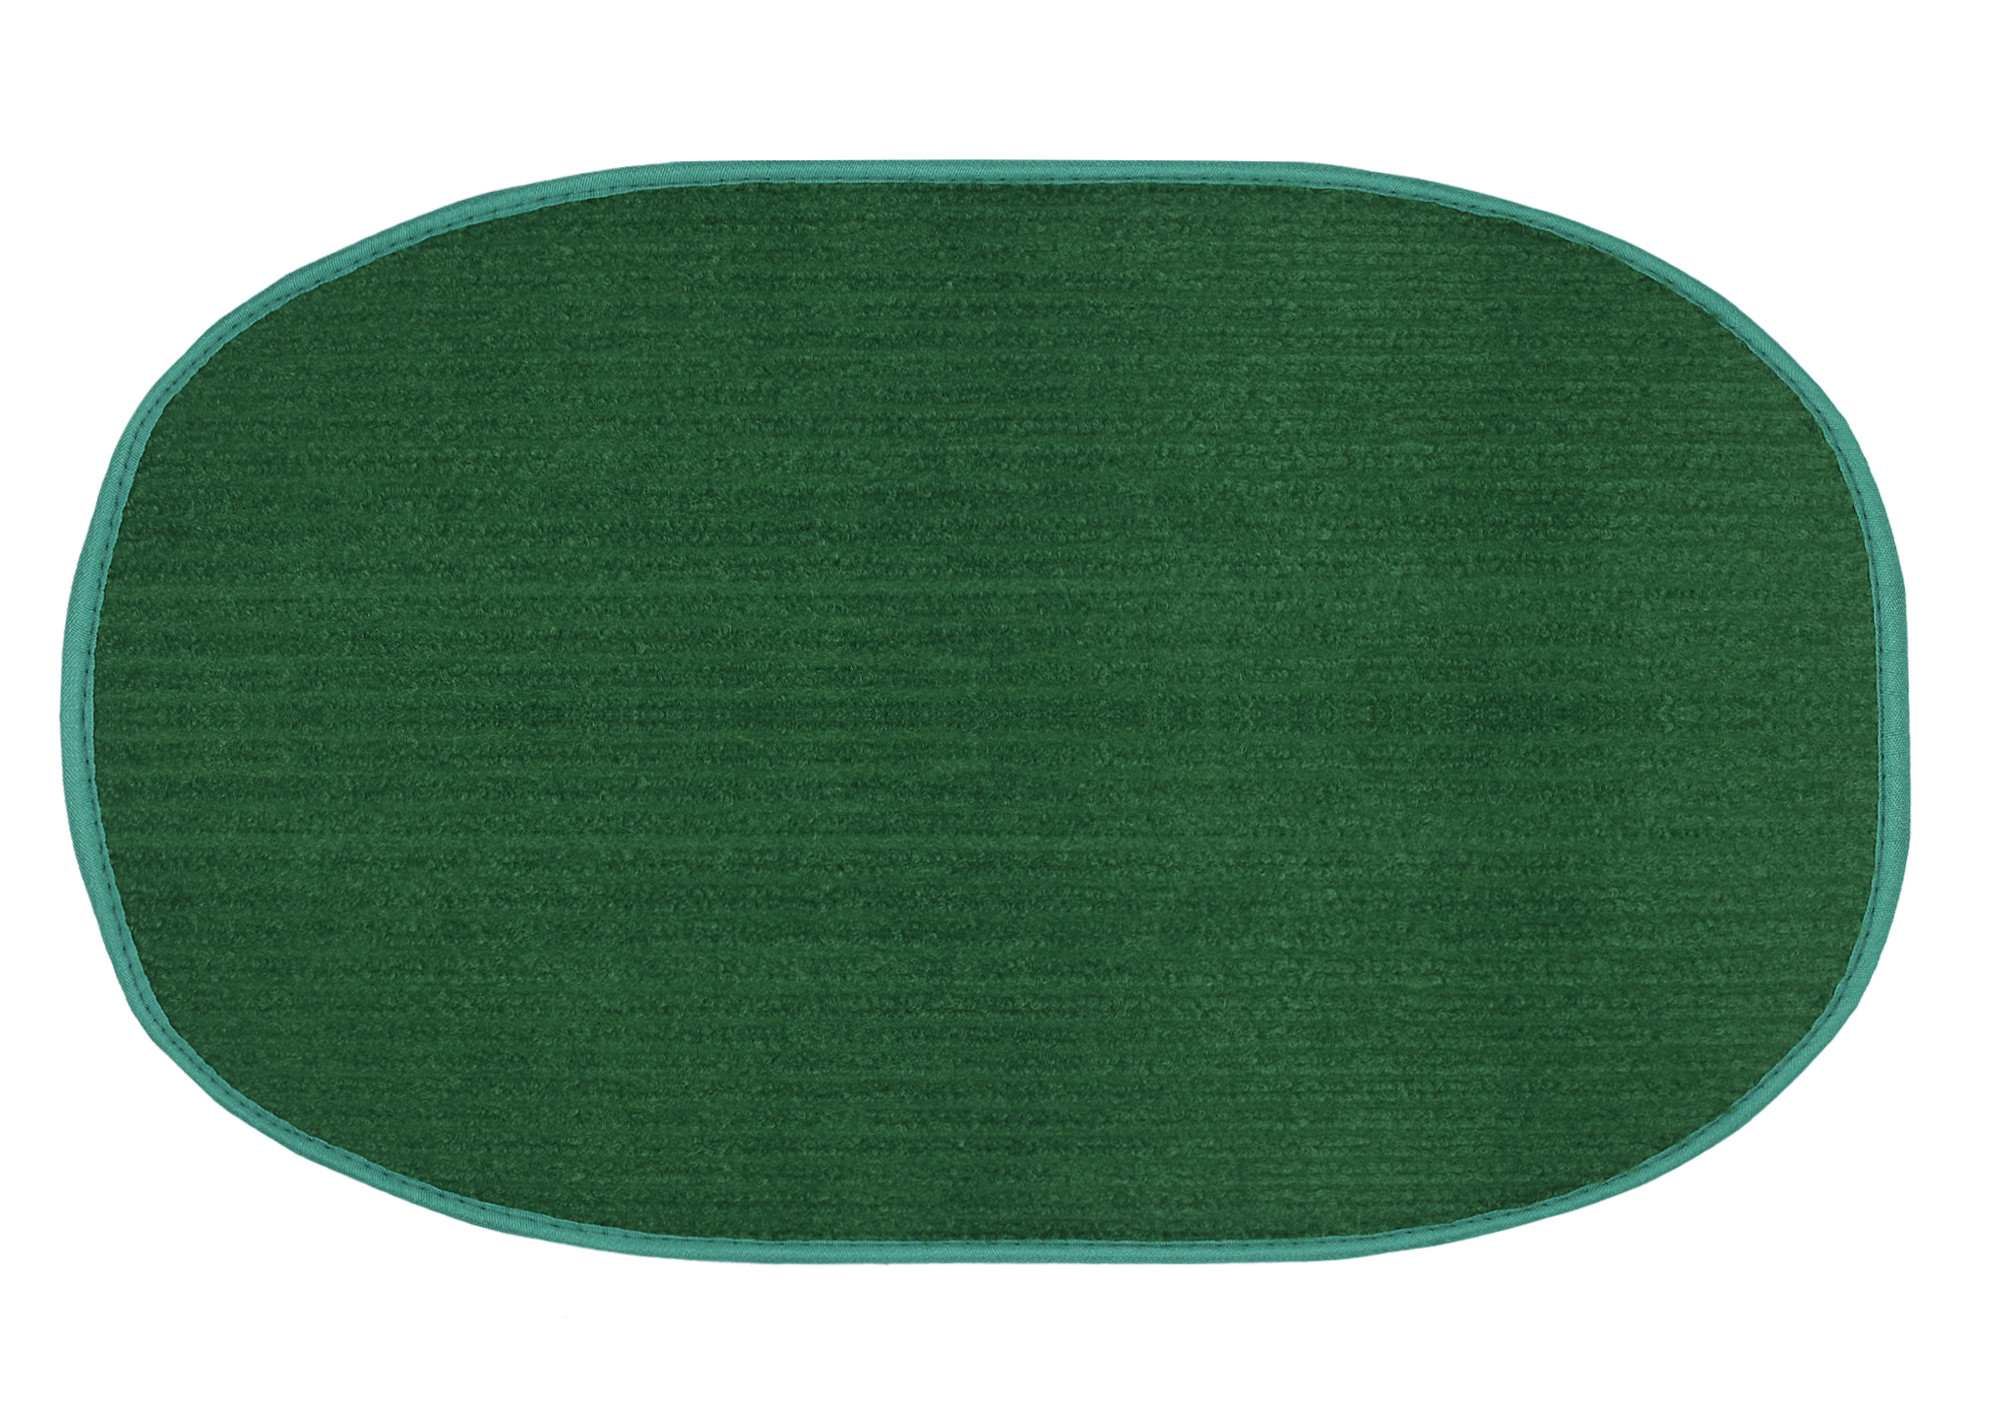 Kuber Industries Oval Shape Durable Microfiber Door Mat, Heavy Duty Doormat, Indoor Outdoor, Easy Clean, Waterproof, Low-Profile Mats for Entry, Patio, Garage (Set Of 2,14'' x 23'',Maroon & Green)-KUBMRT12107